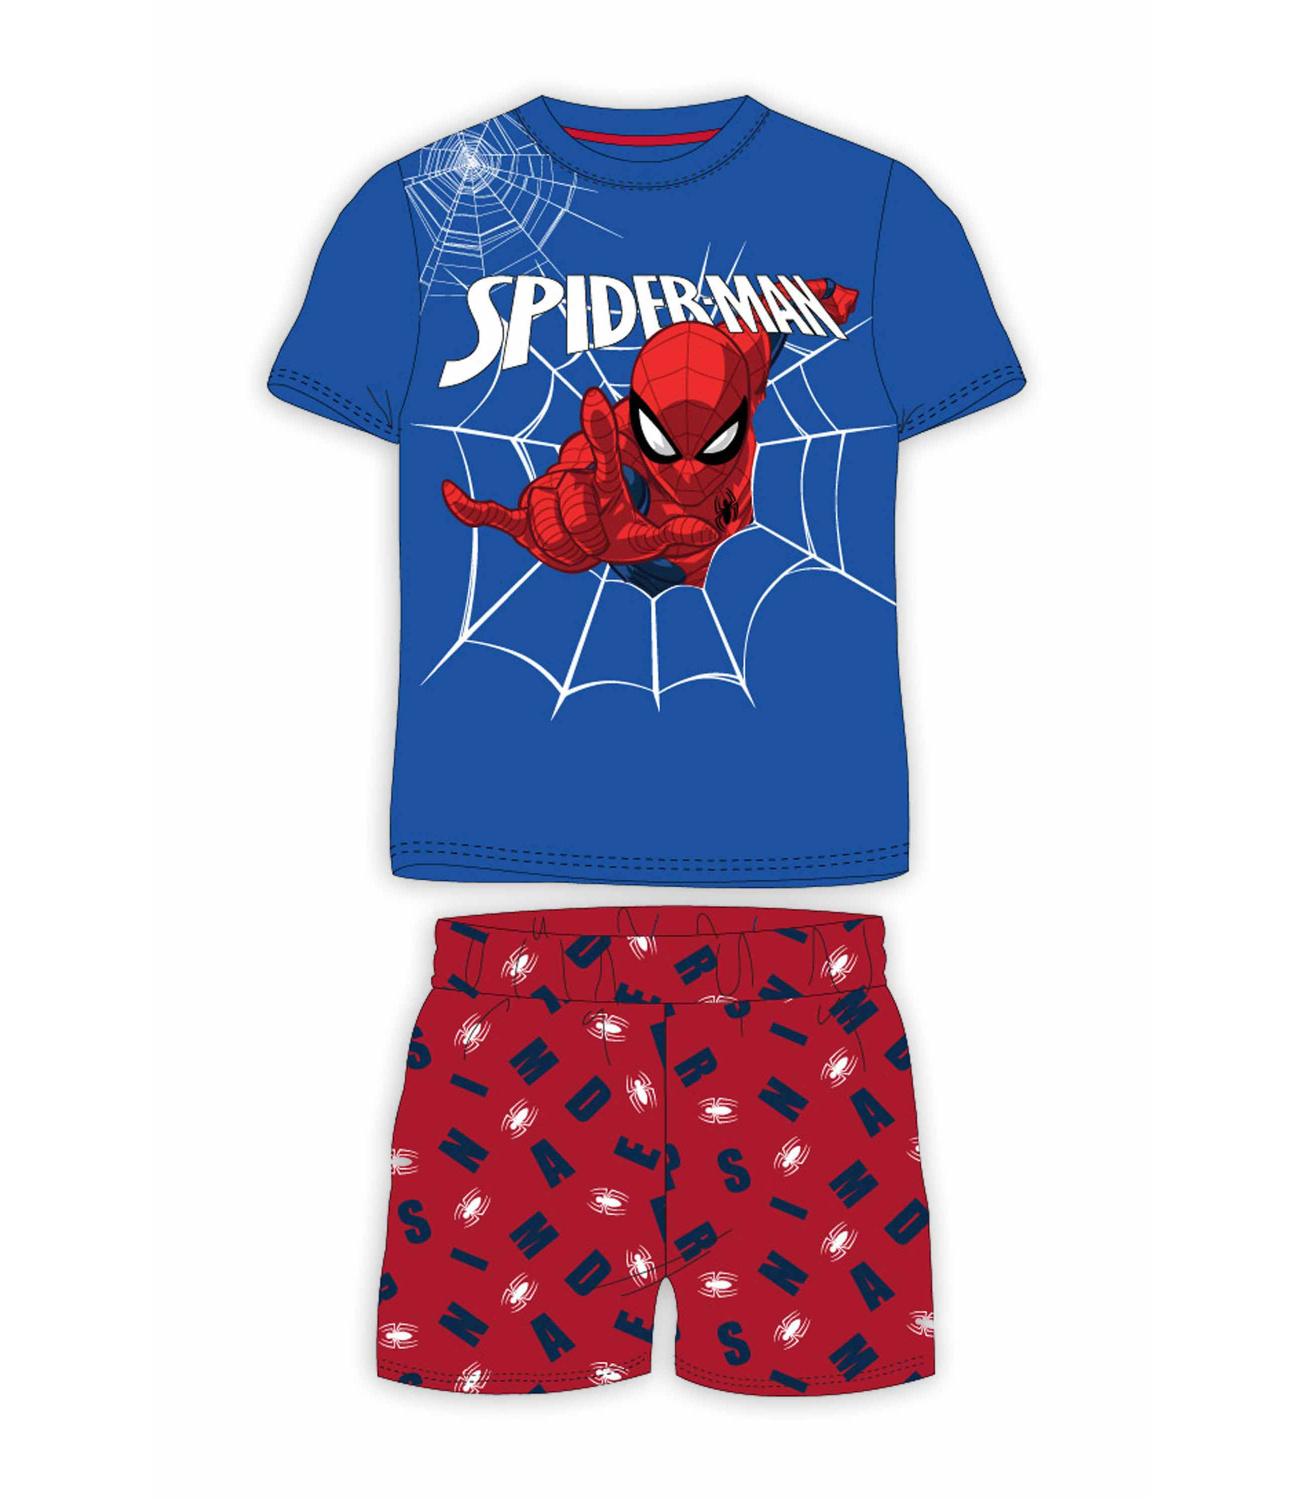 Spider-Man® Pijama albastru-rosu 957407